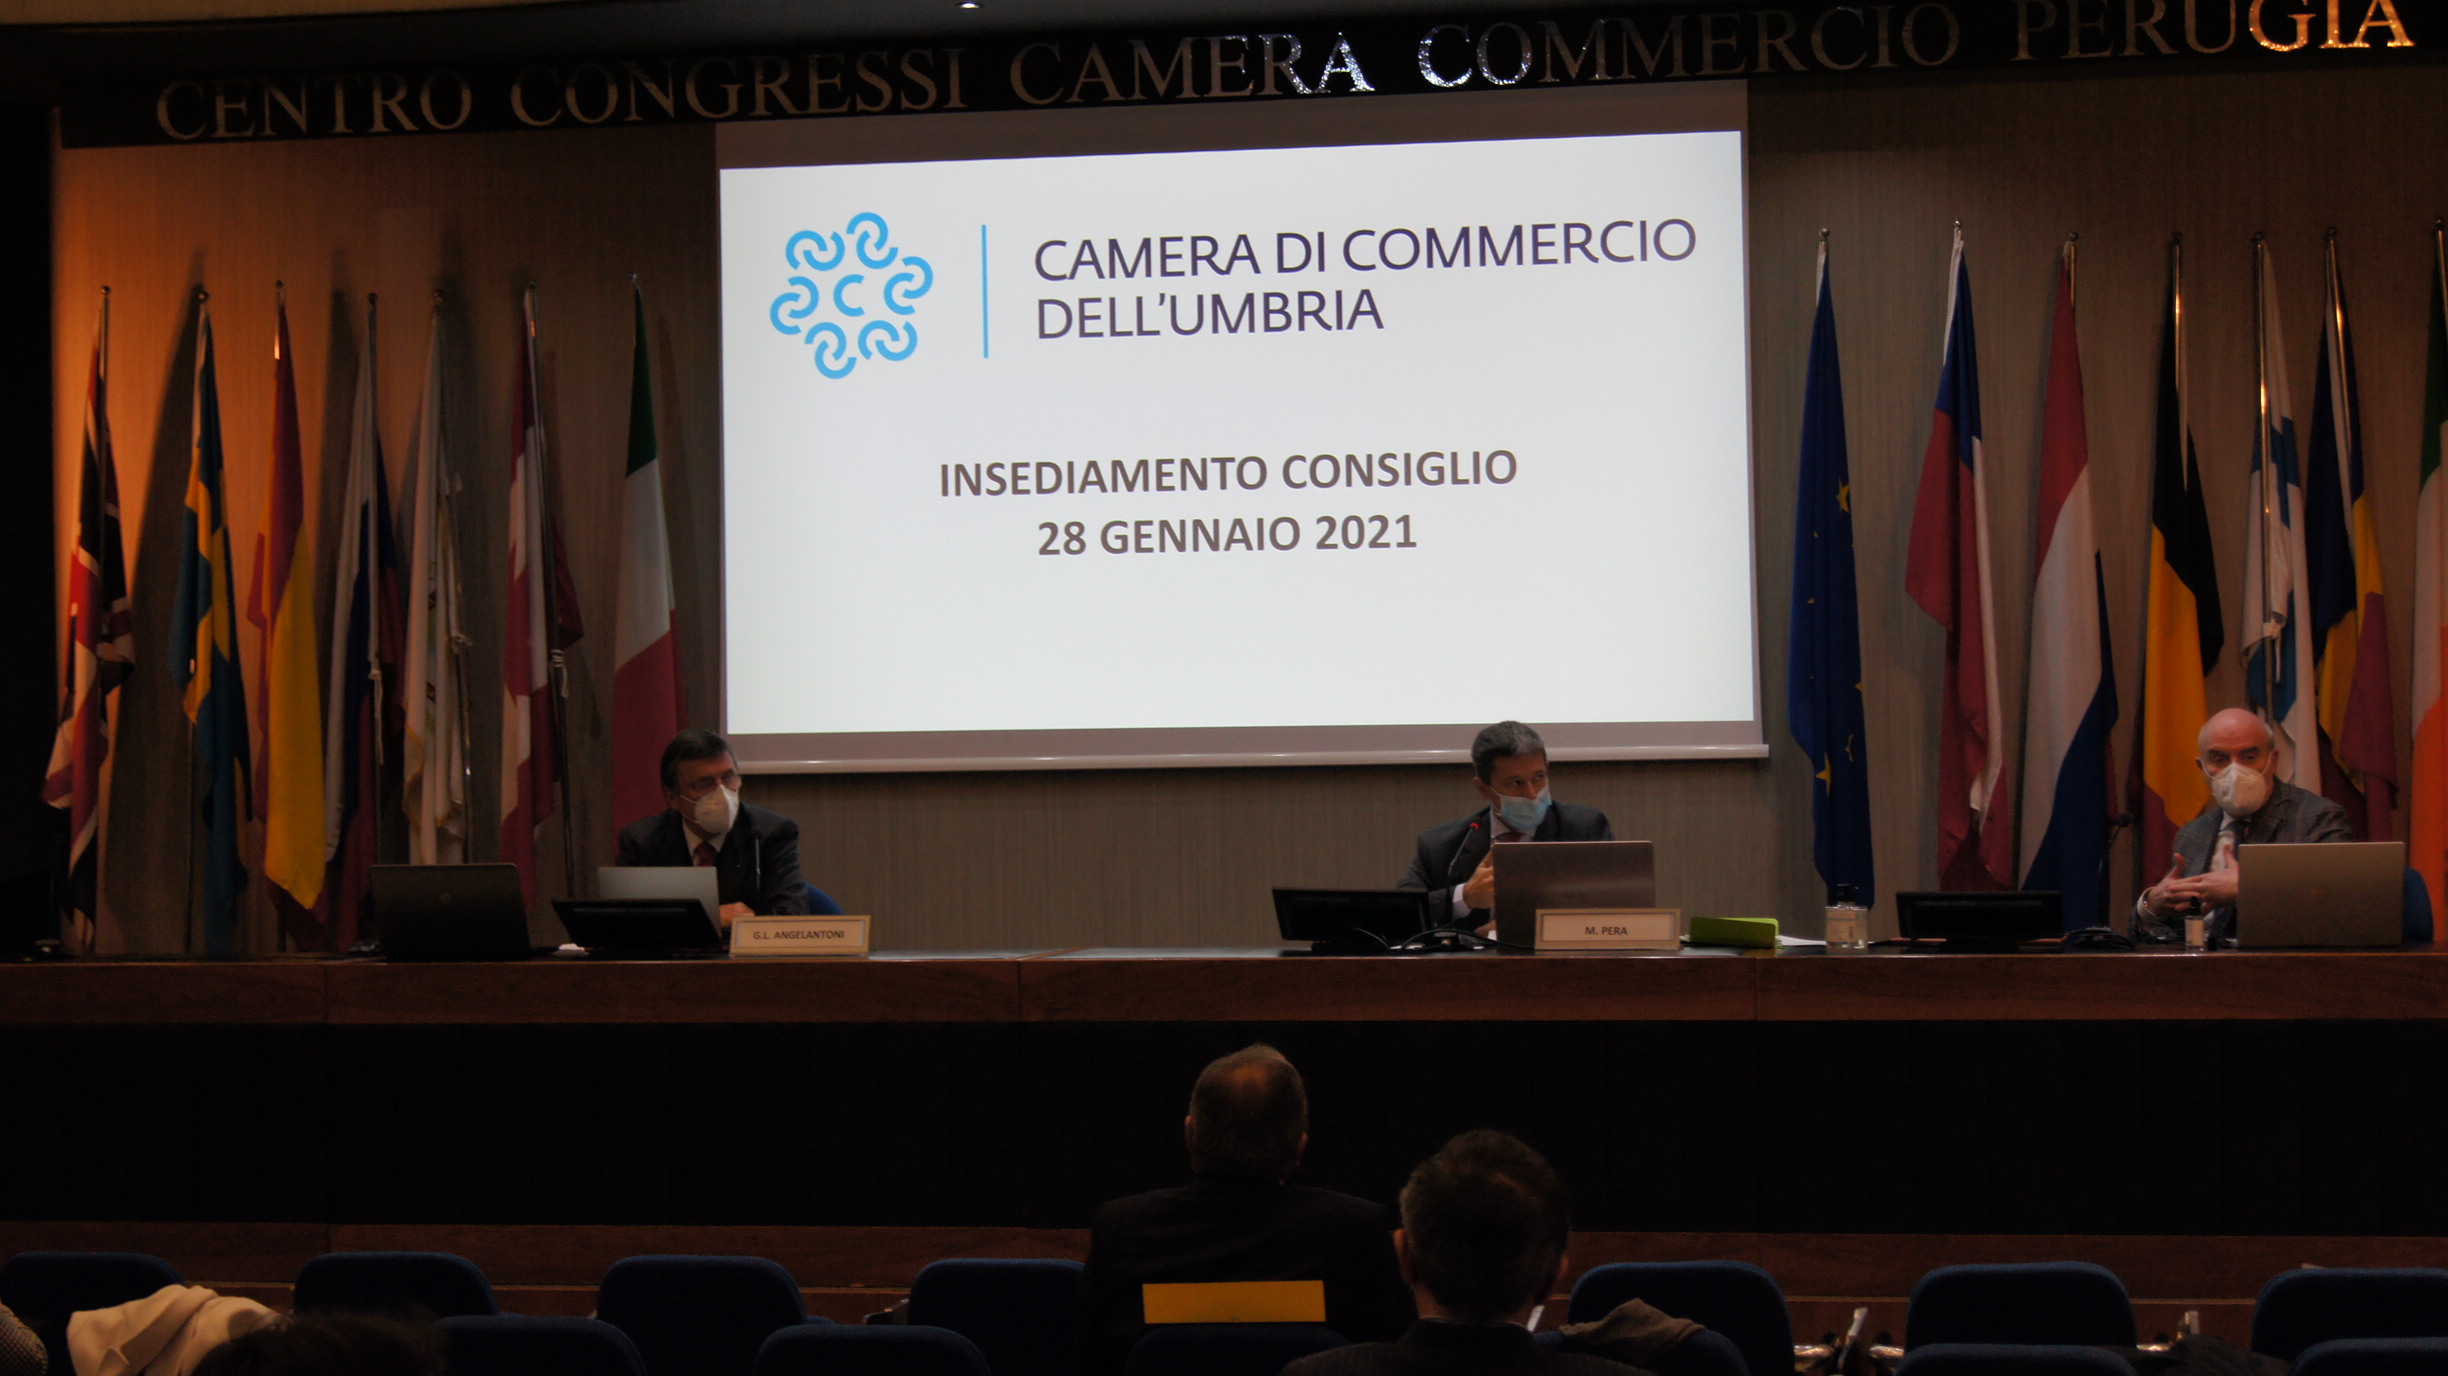 Costituita la Camera di Commercio dell’Umbria. Insediato il Consiglio camerale: il primo Presidente è Giorgio Mencaroni.